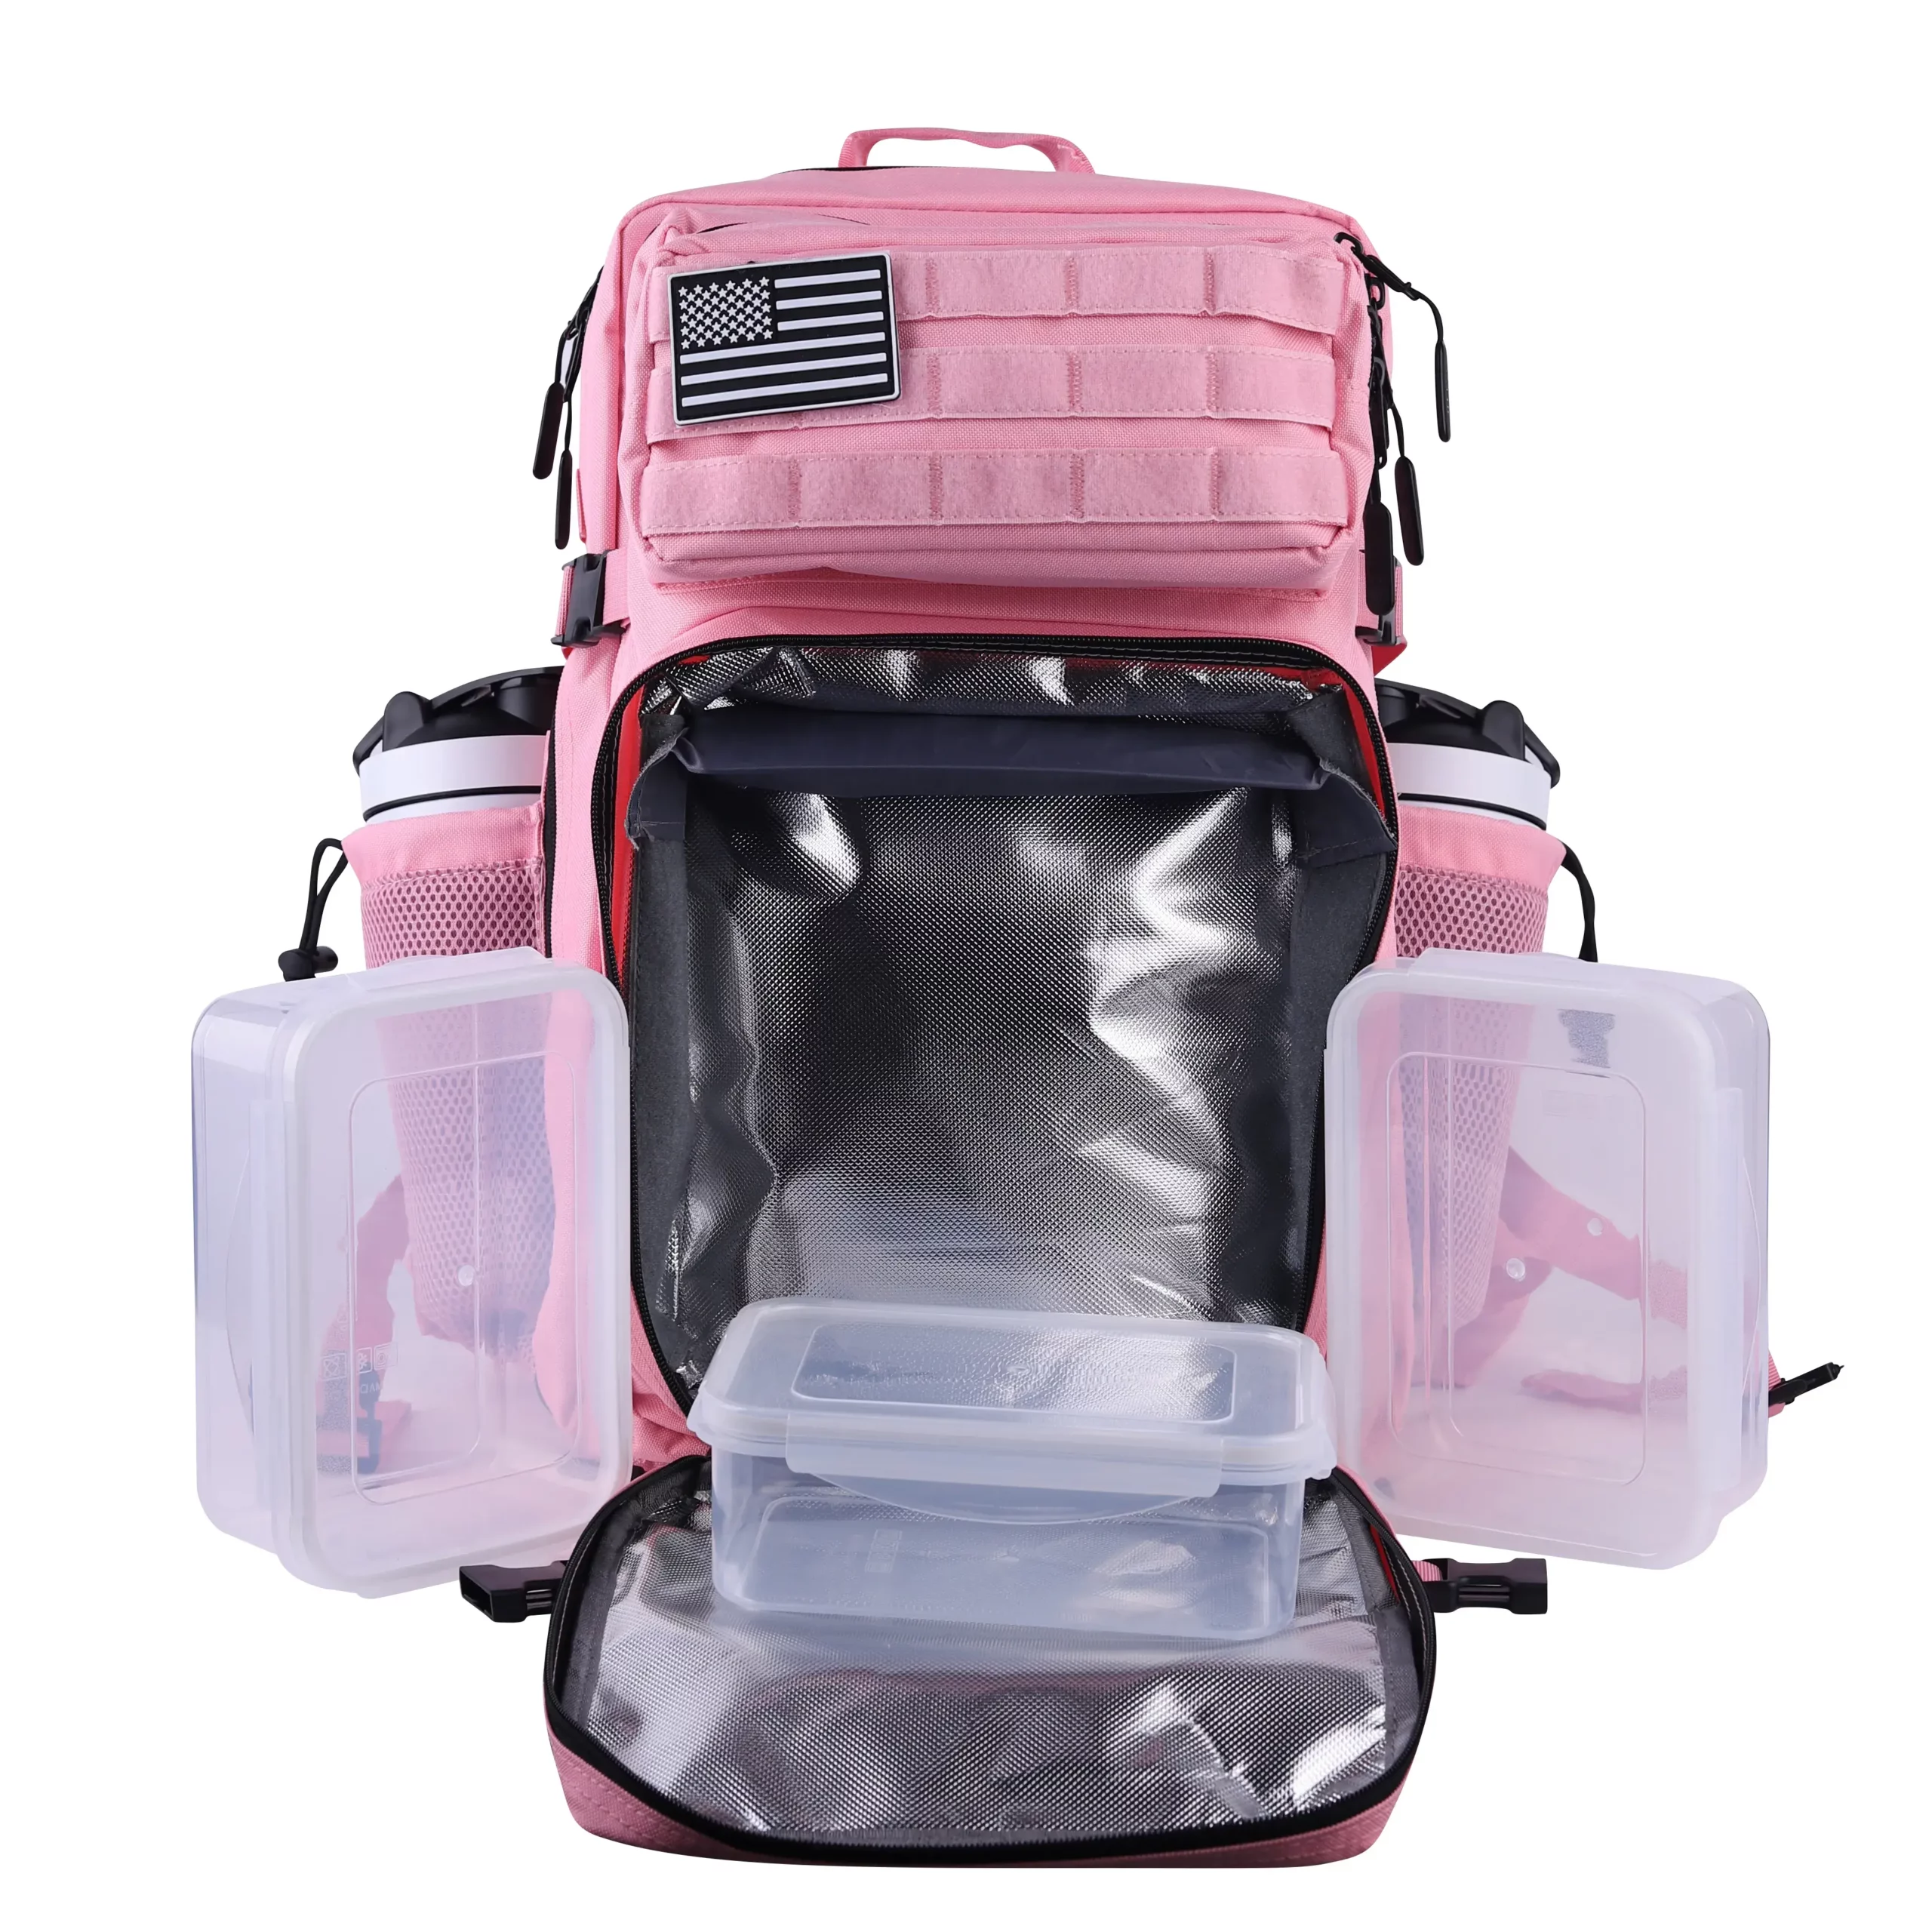 https://lhibackpack.com/wp-content/uploads/2022/05/LHI-45L-Meal-Prep-Management-Backpack-Pink-02-scaled.webp